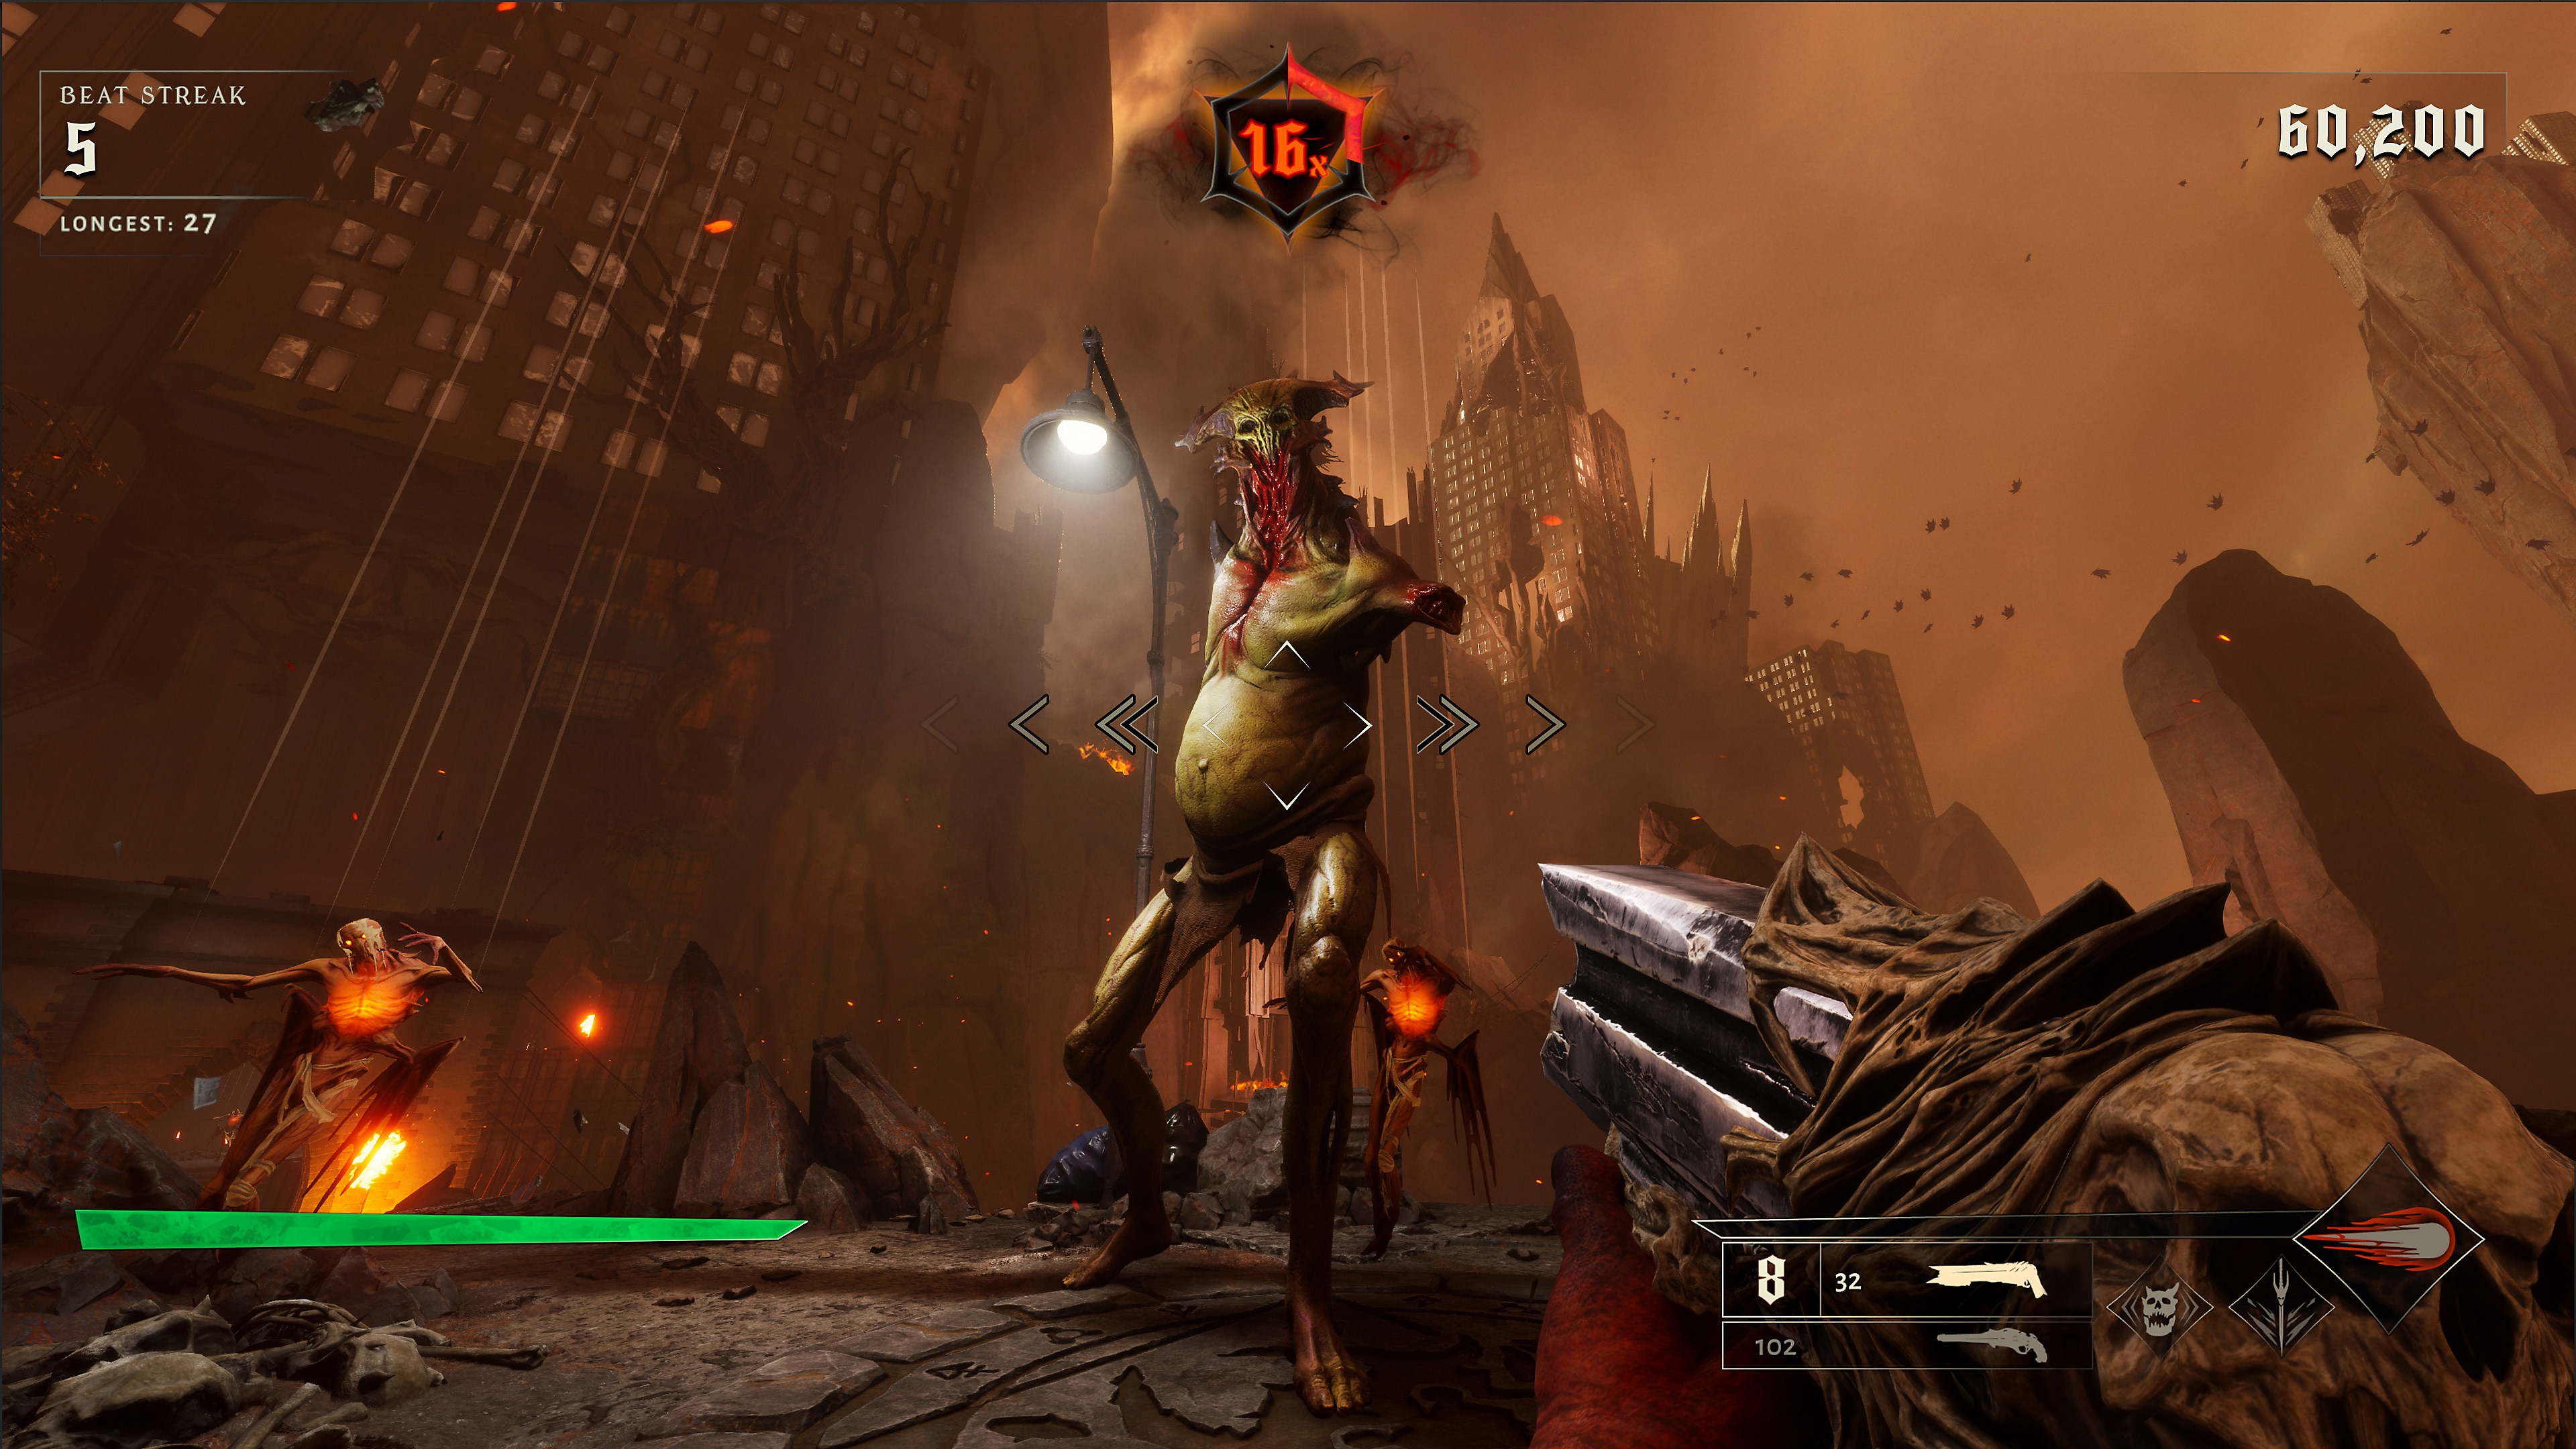 Captura de pantalla de Metal: Hellsinger que muestra a un demonio alto y mutilado al que le faltan miembros y partes del cuerpo.